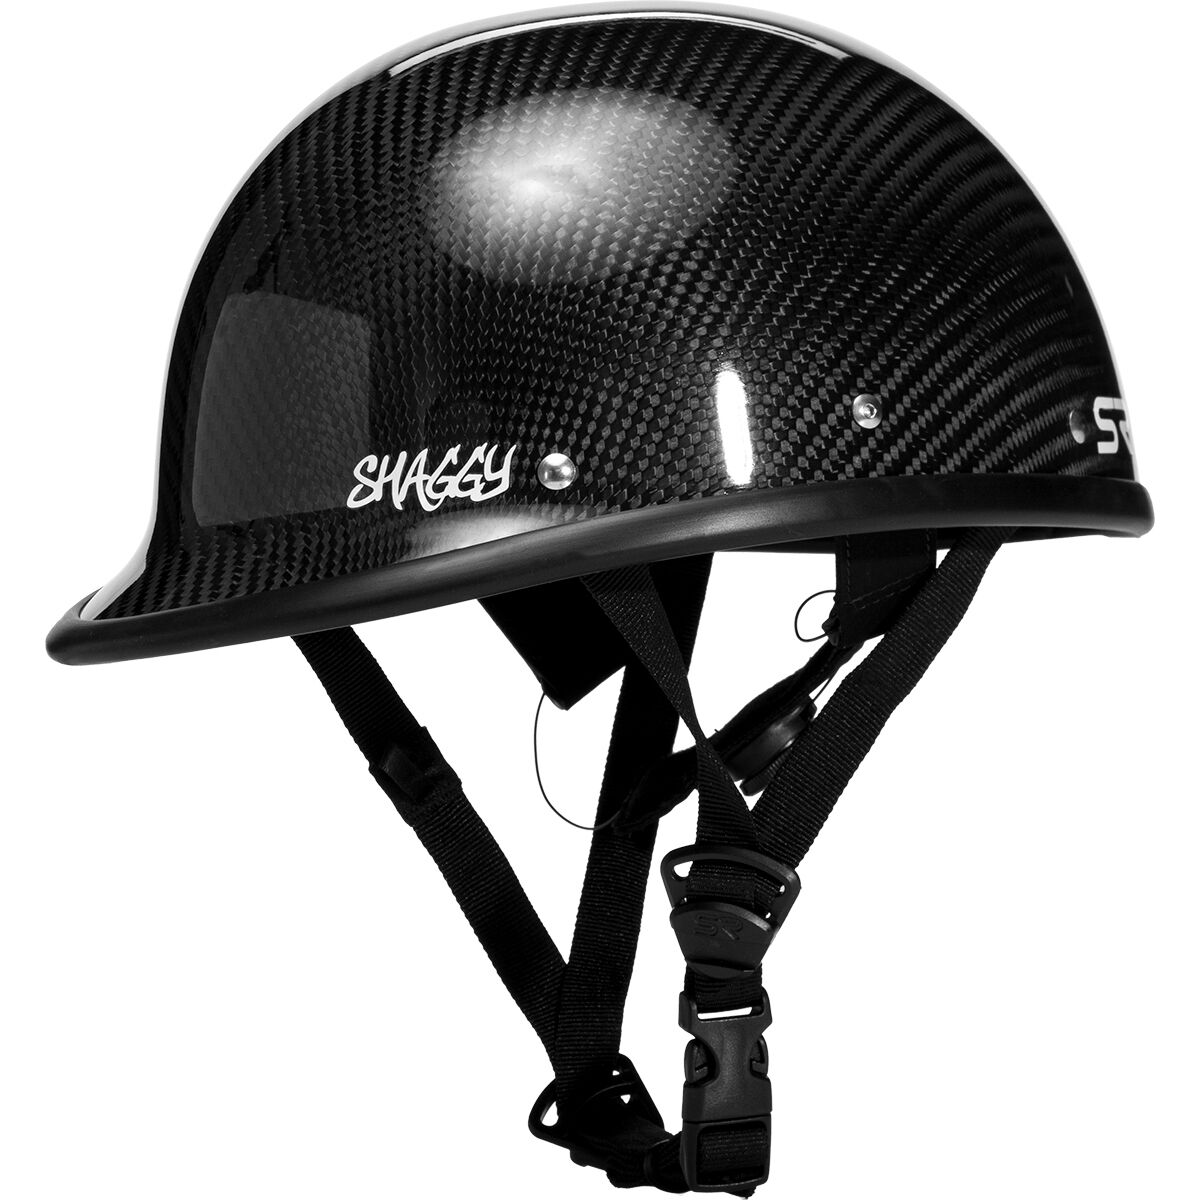 Shred Ready Shaggy Deluxe Carbon Helmet